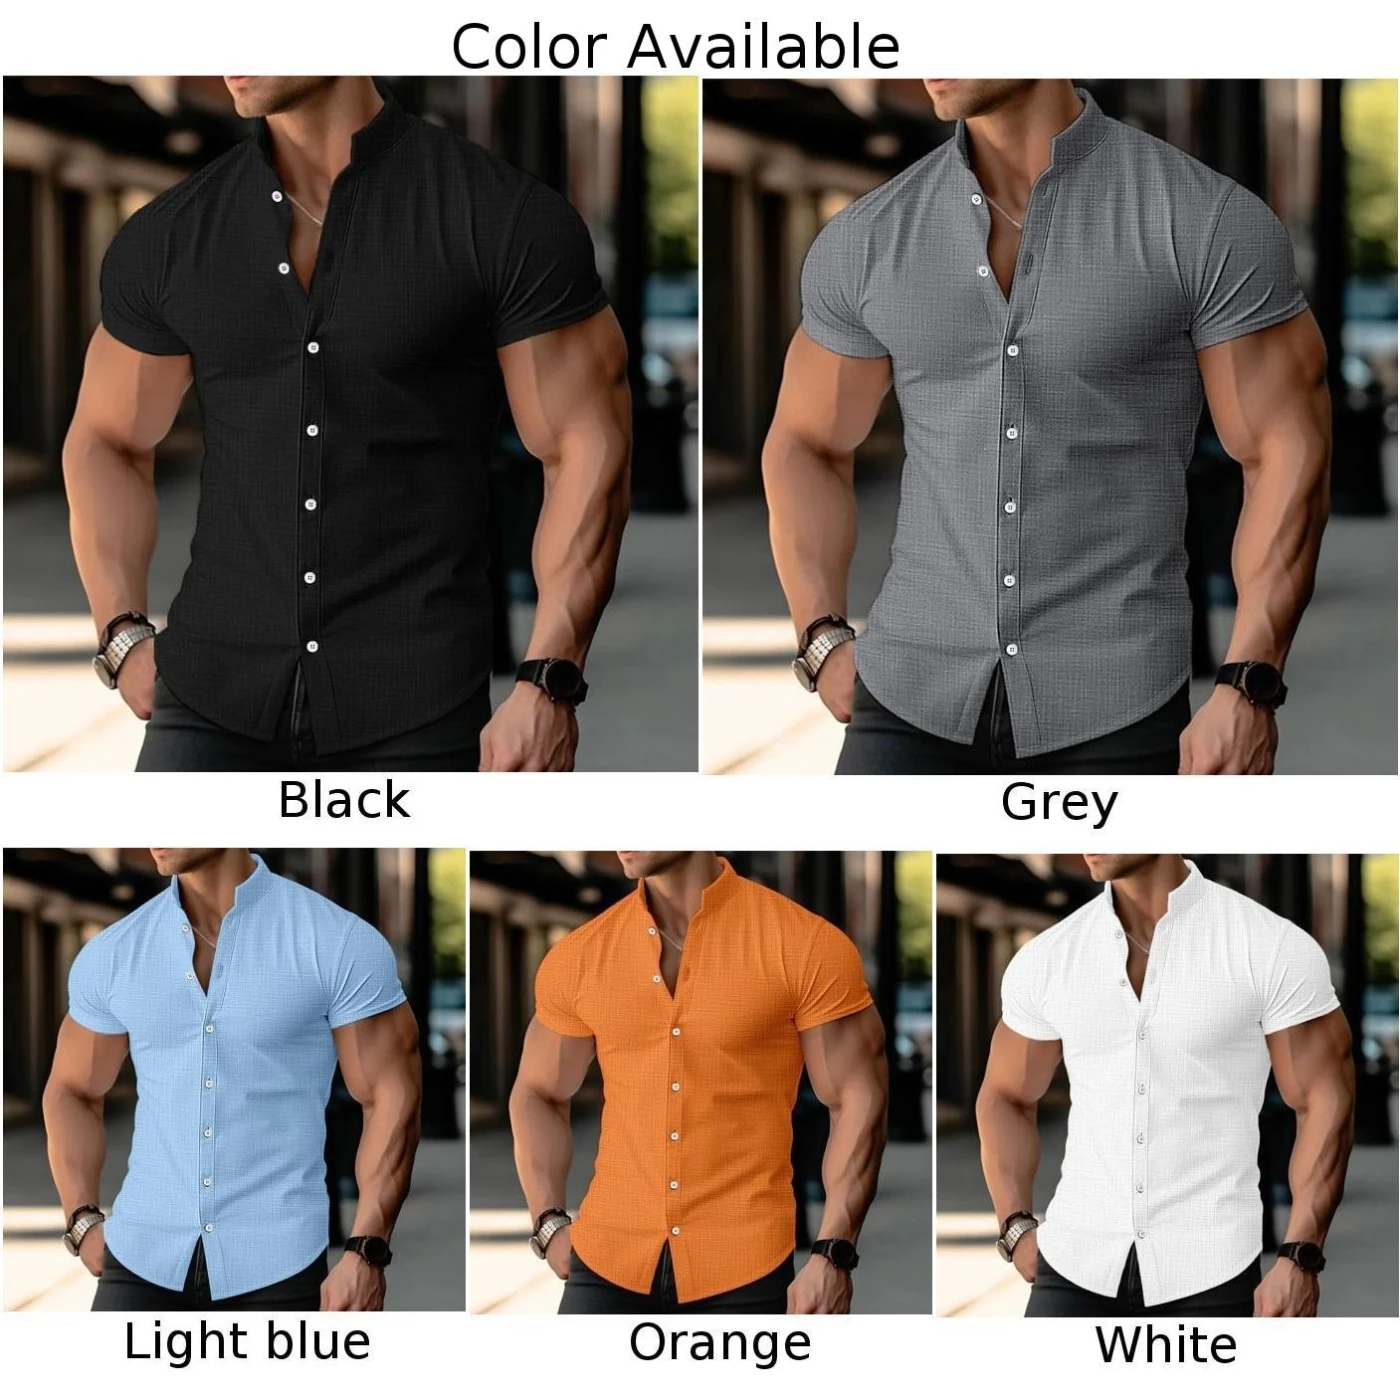 Chemise à col boutonné pour homme, chemise décontractée, chemise confortable, chemisier musculaire, chemise régulière en polyester, 1 PC